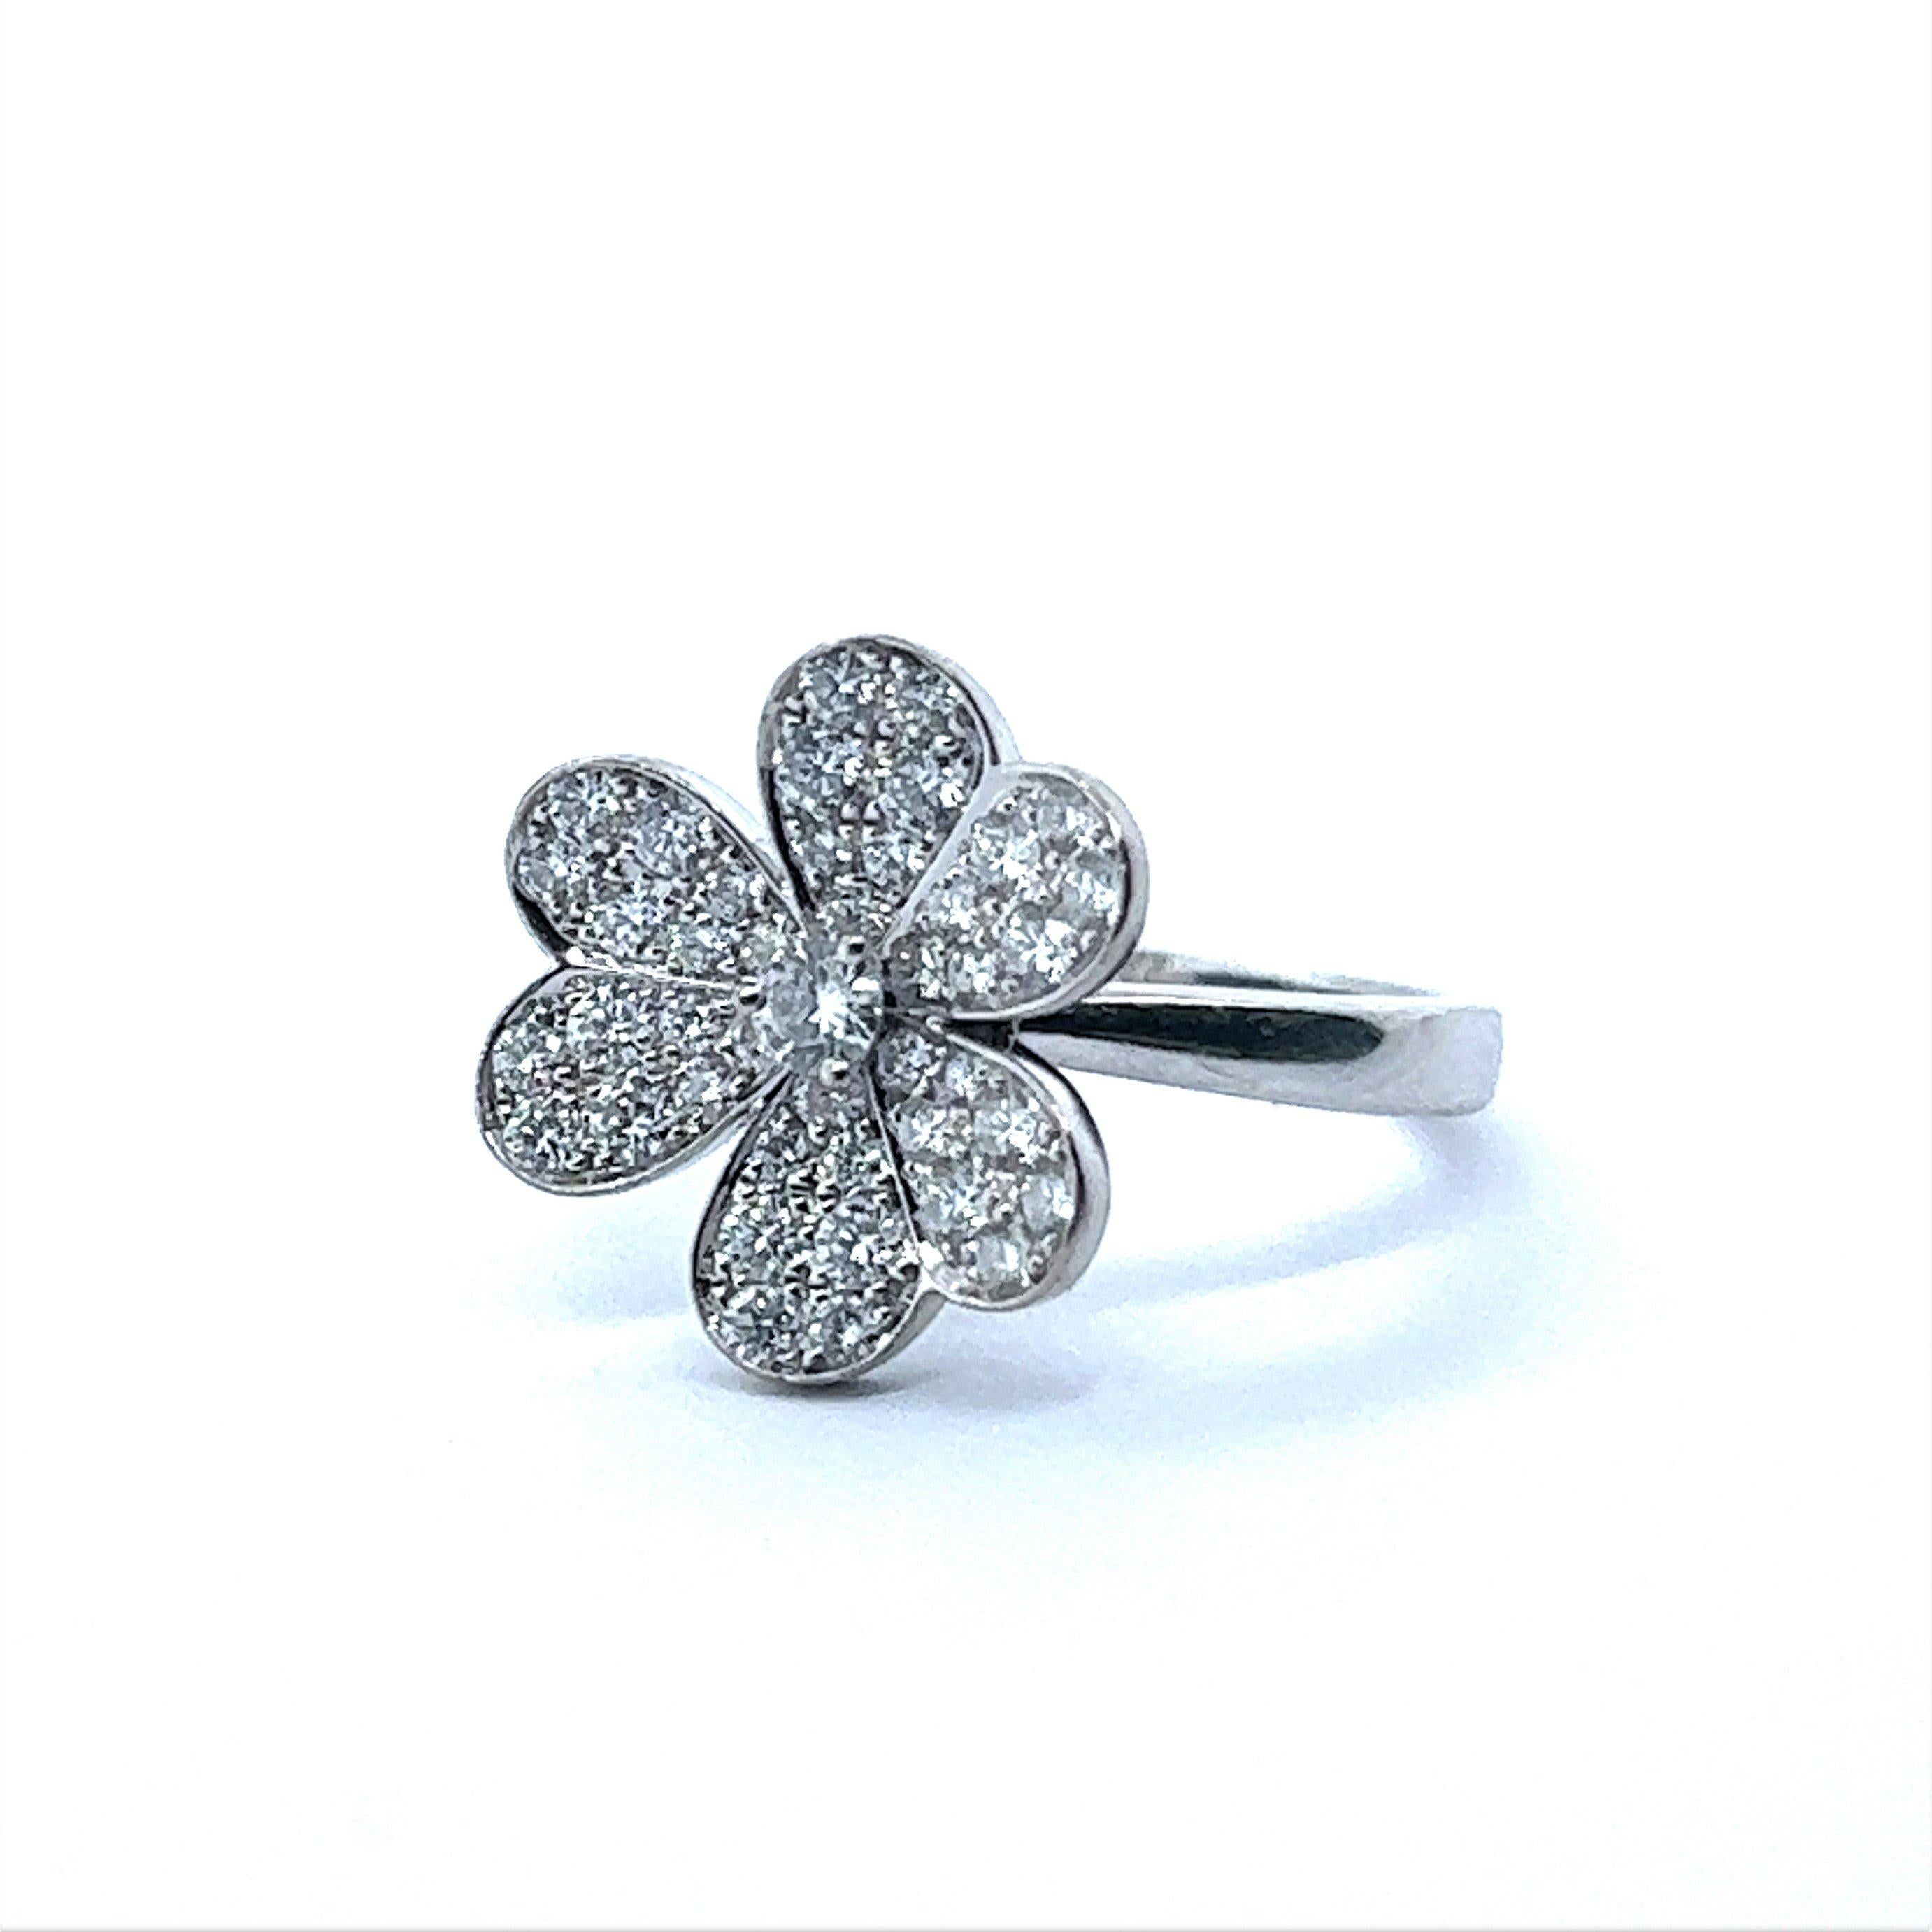 Van Cleef & Arpels Frivole Flower Diamond Ring in 18 Karat White Gold 1